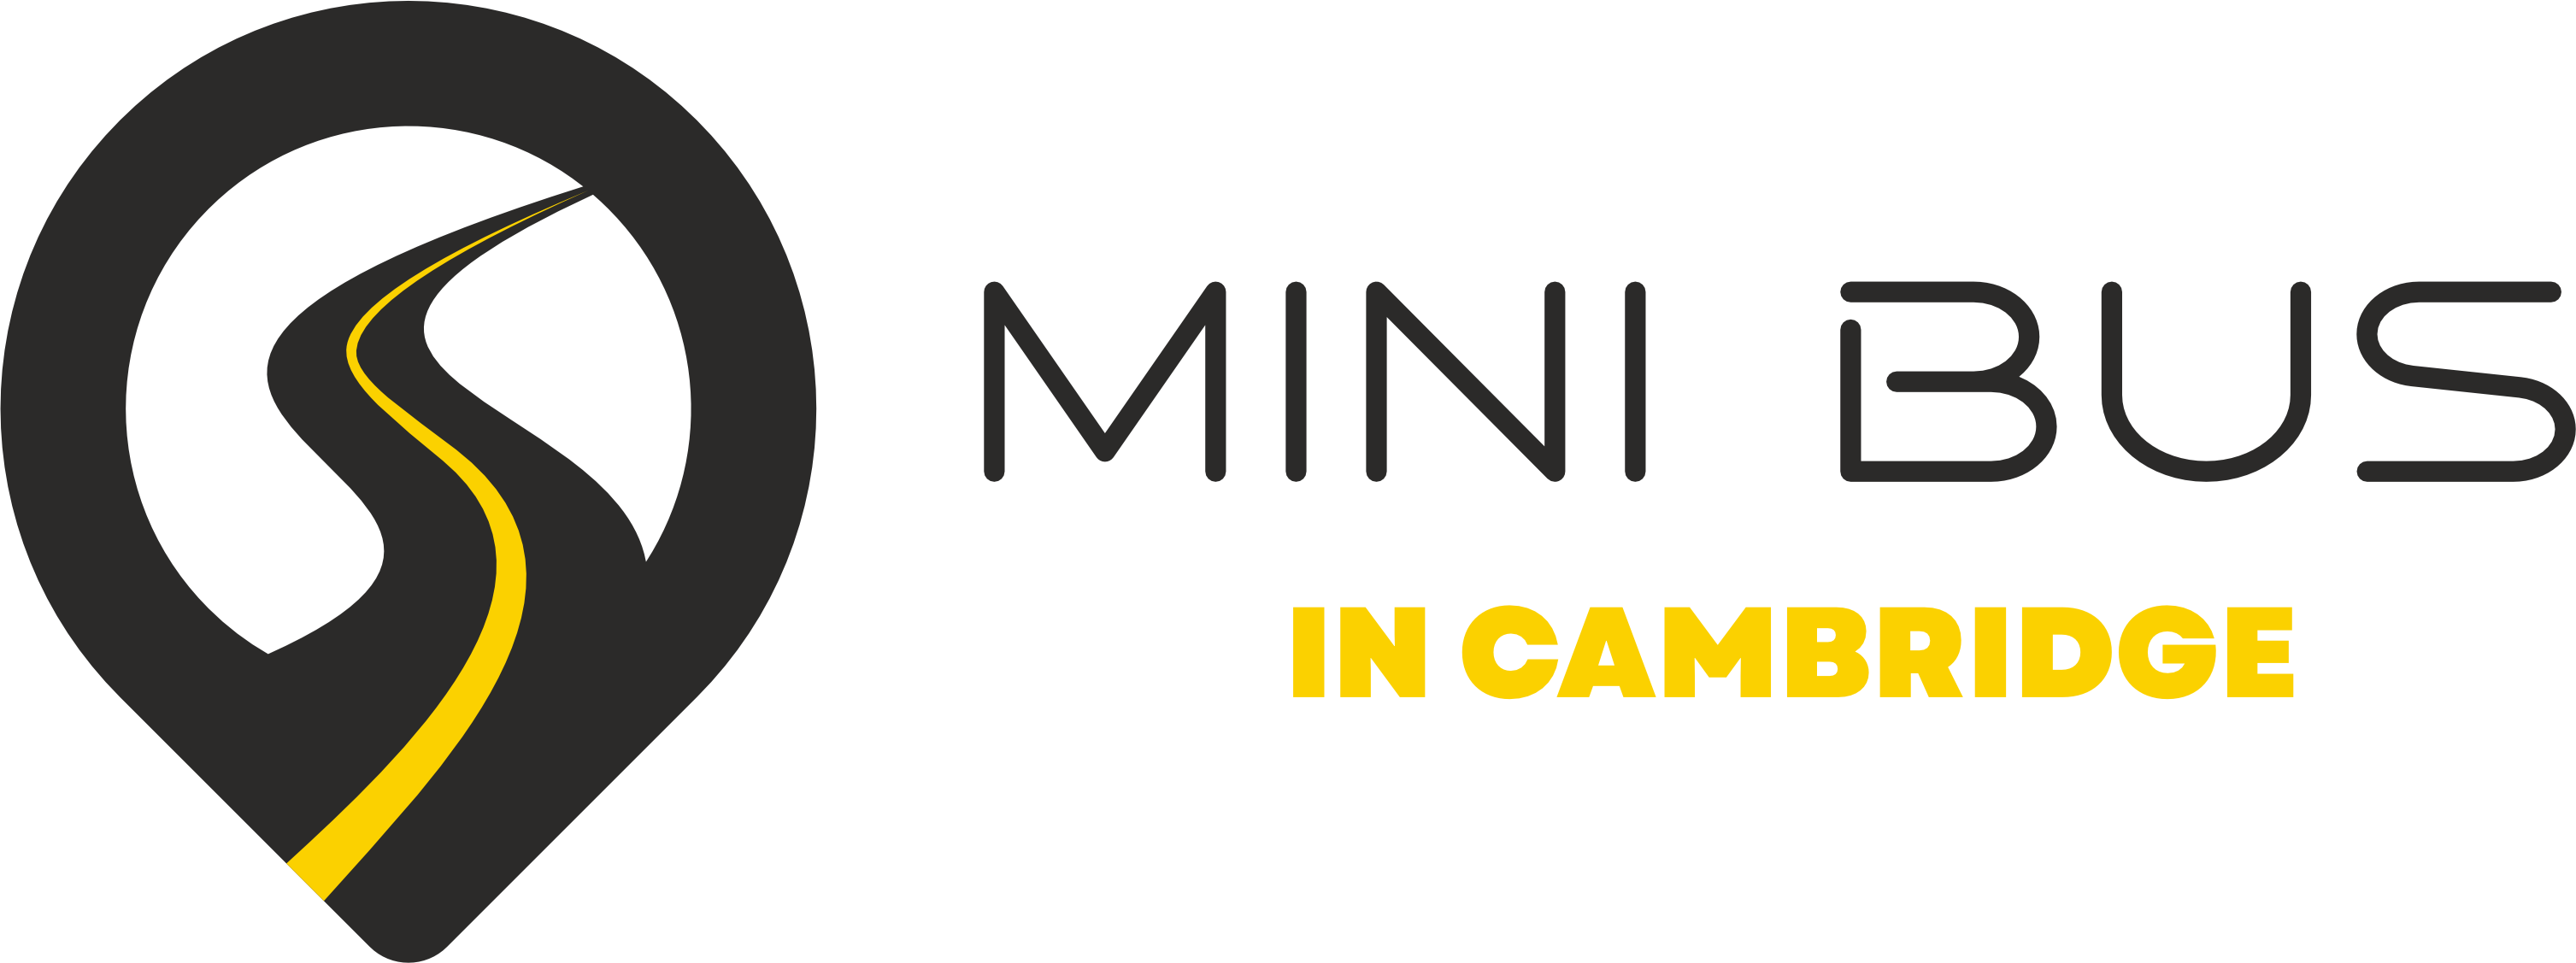 Minibus in Cambridge logo